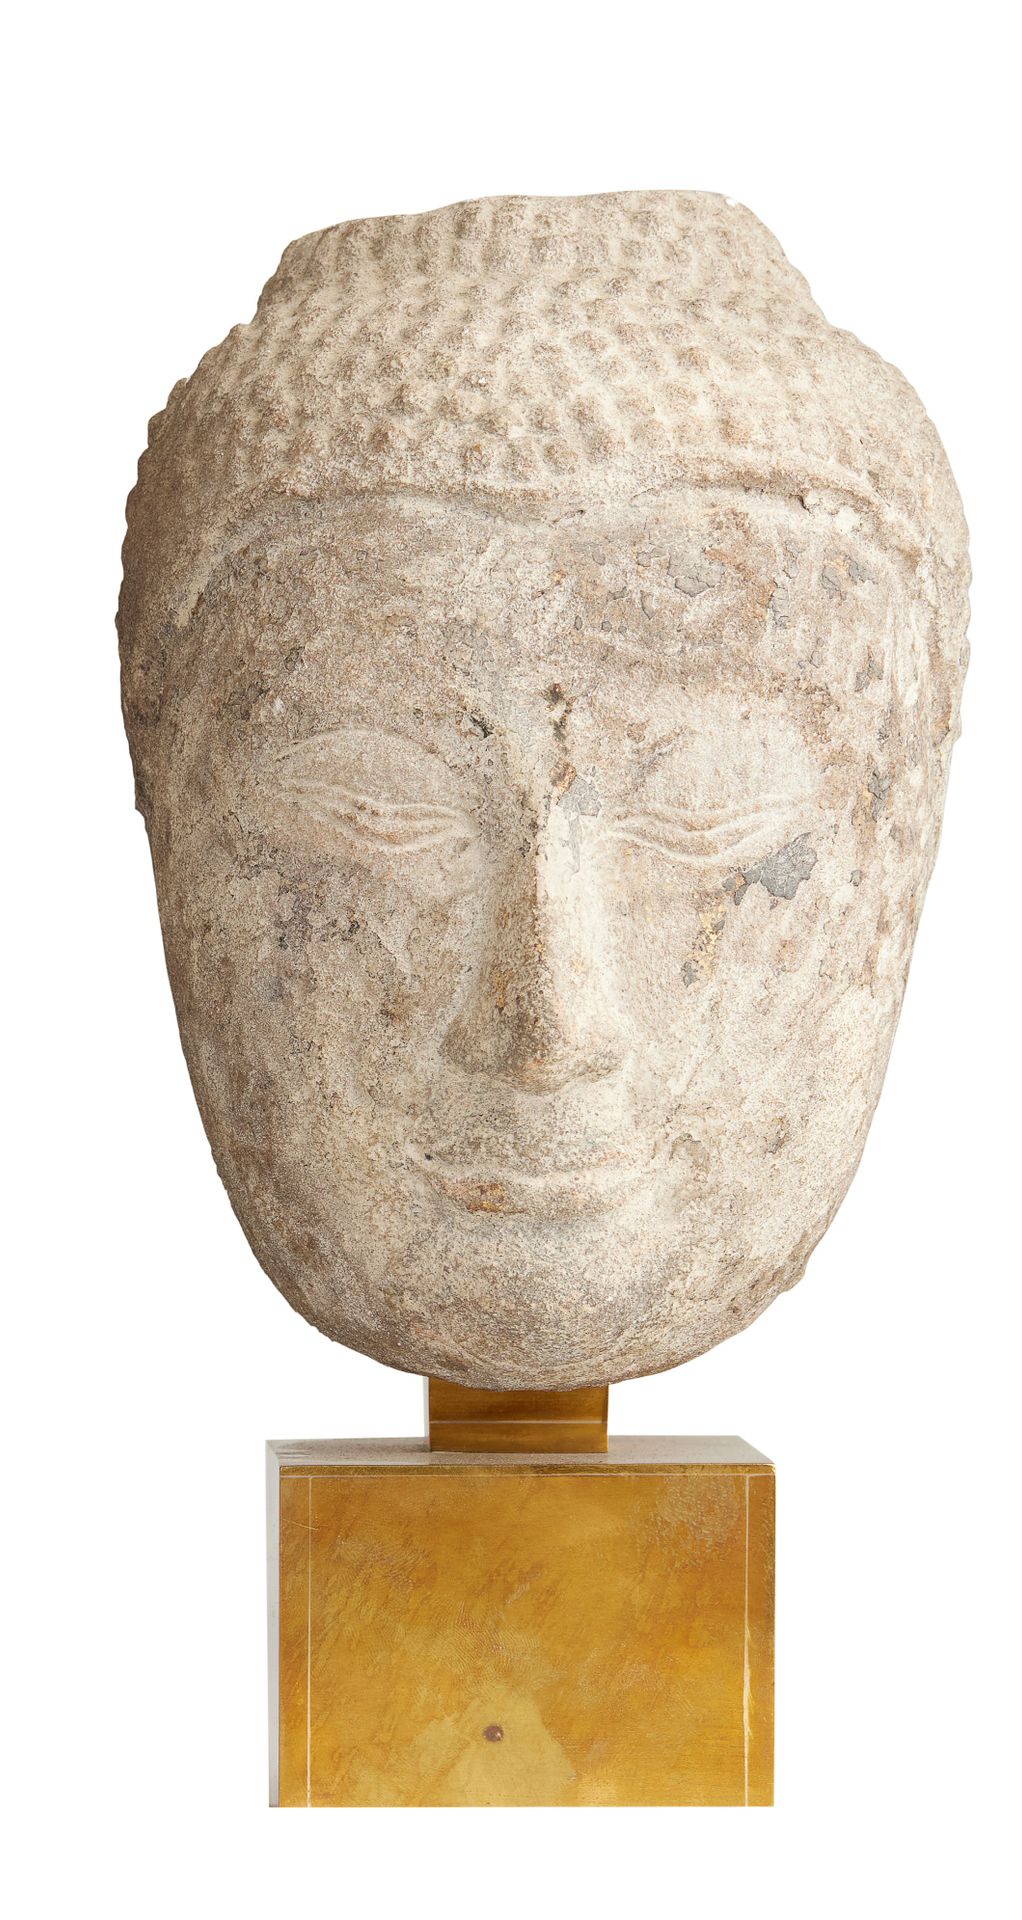 Null 菩萨头
米色砂岩，以前是涂漆的。
半闭着眼睛的脸，露出一丝微笑，表达了
安宁
暹罗，大城府，16-17世纪
高：18厘米